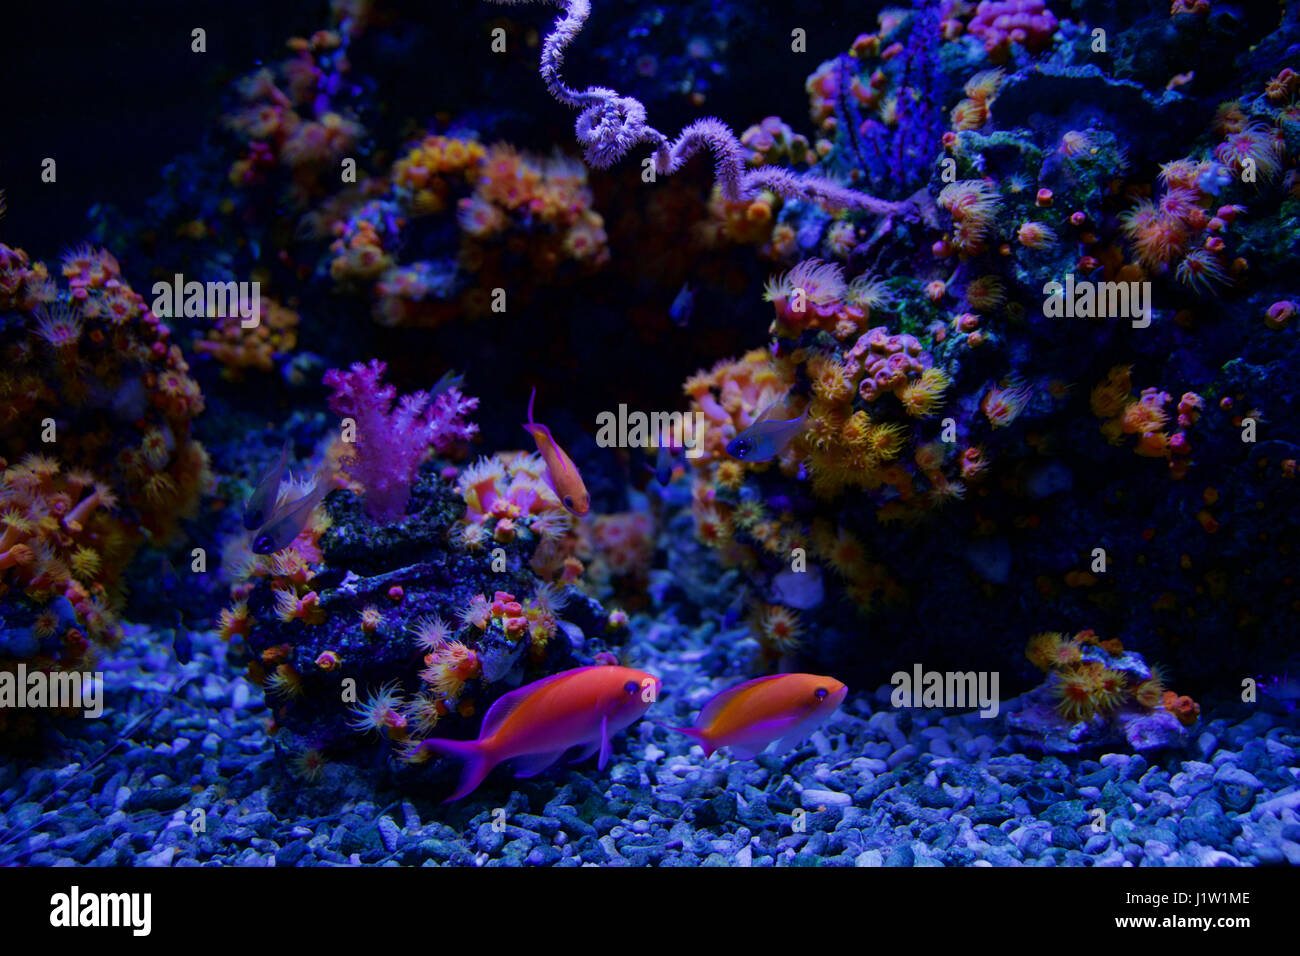 SEATTLE, WASHINGTON, STATI UNITI D'AMERICA - gennaio 25th, 2017: corallo esotici pesci di acquario marino su sfondo blu Foto Stock